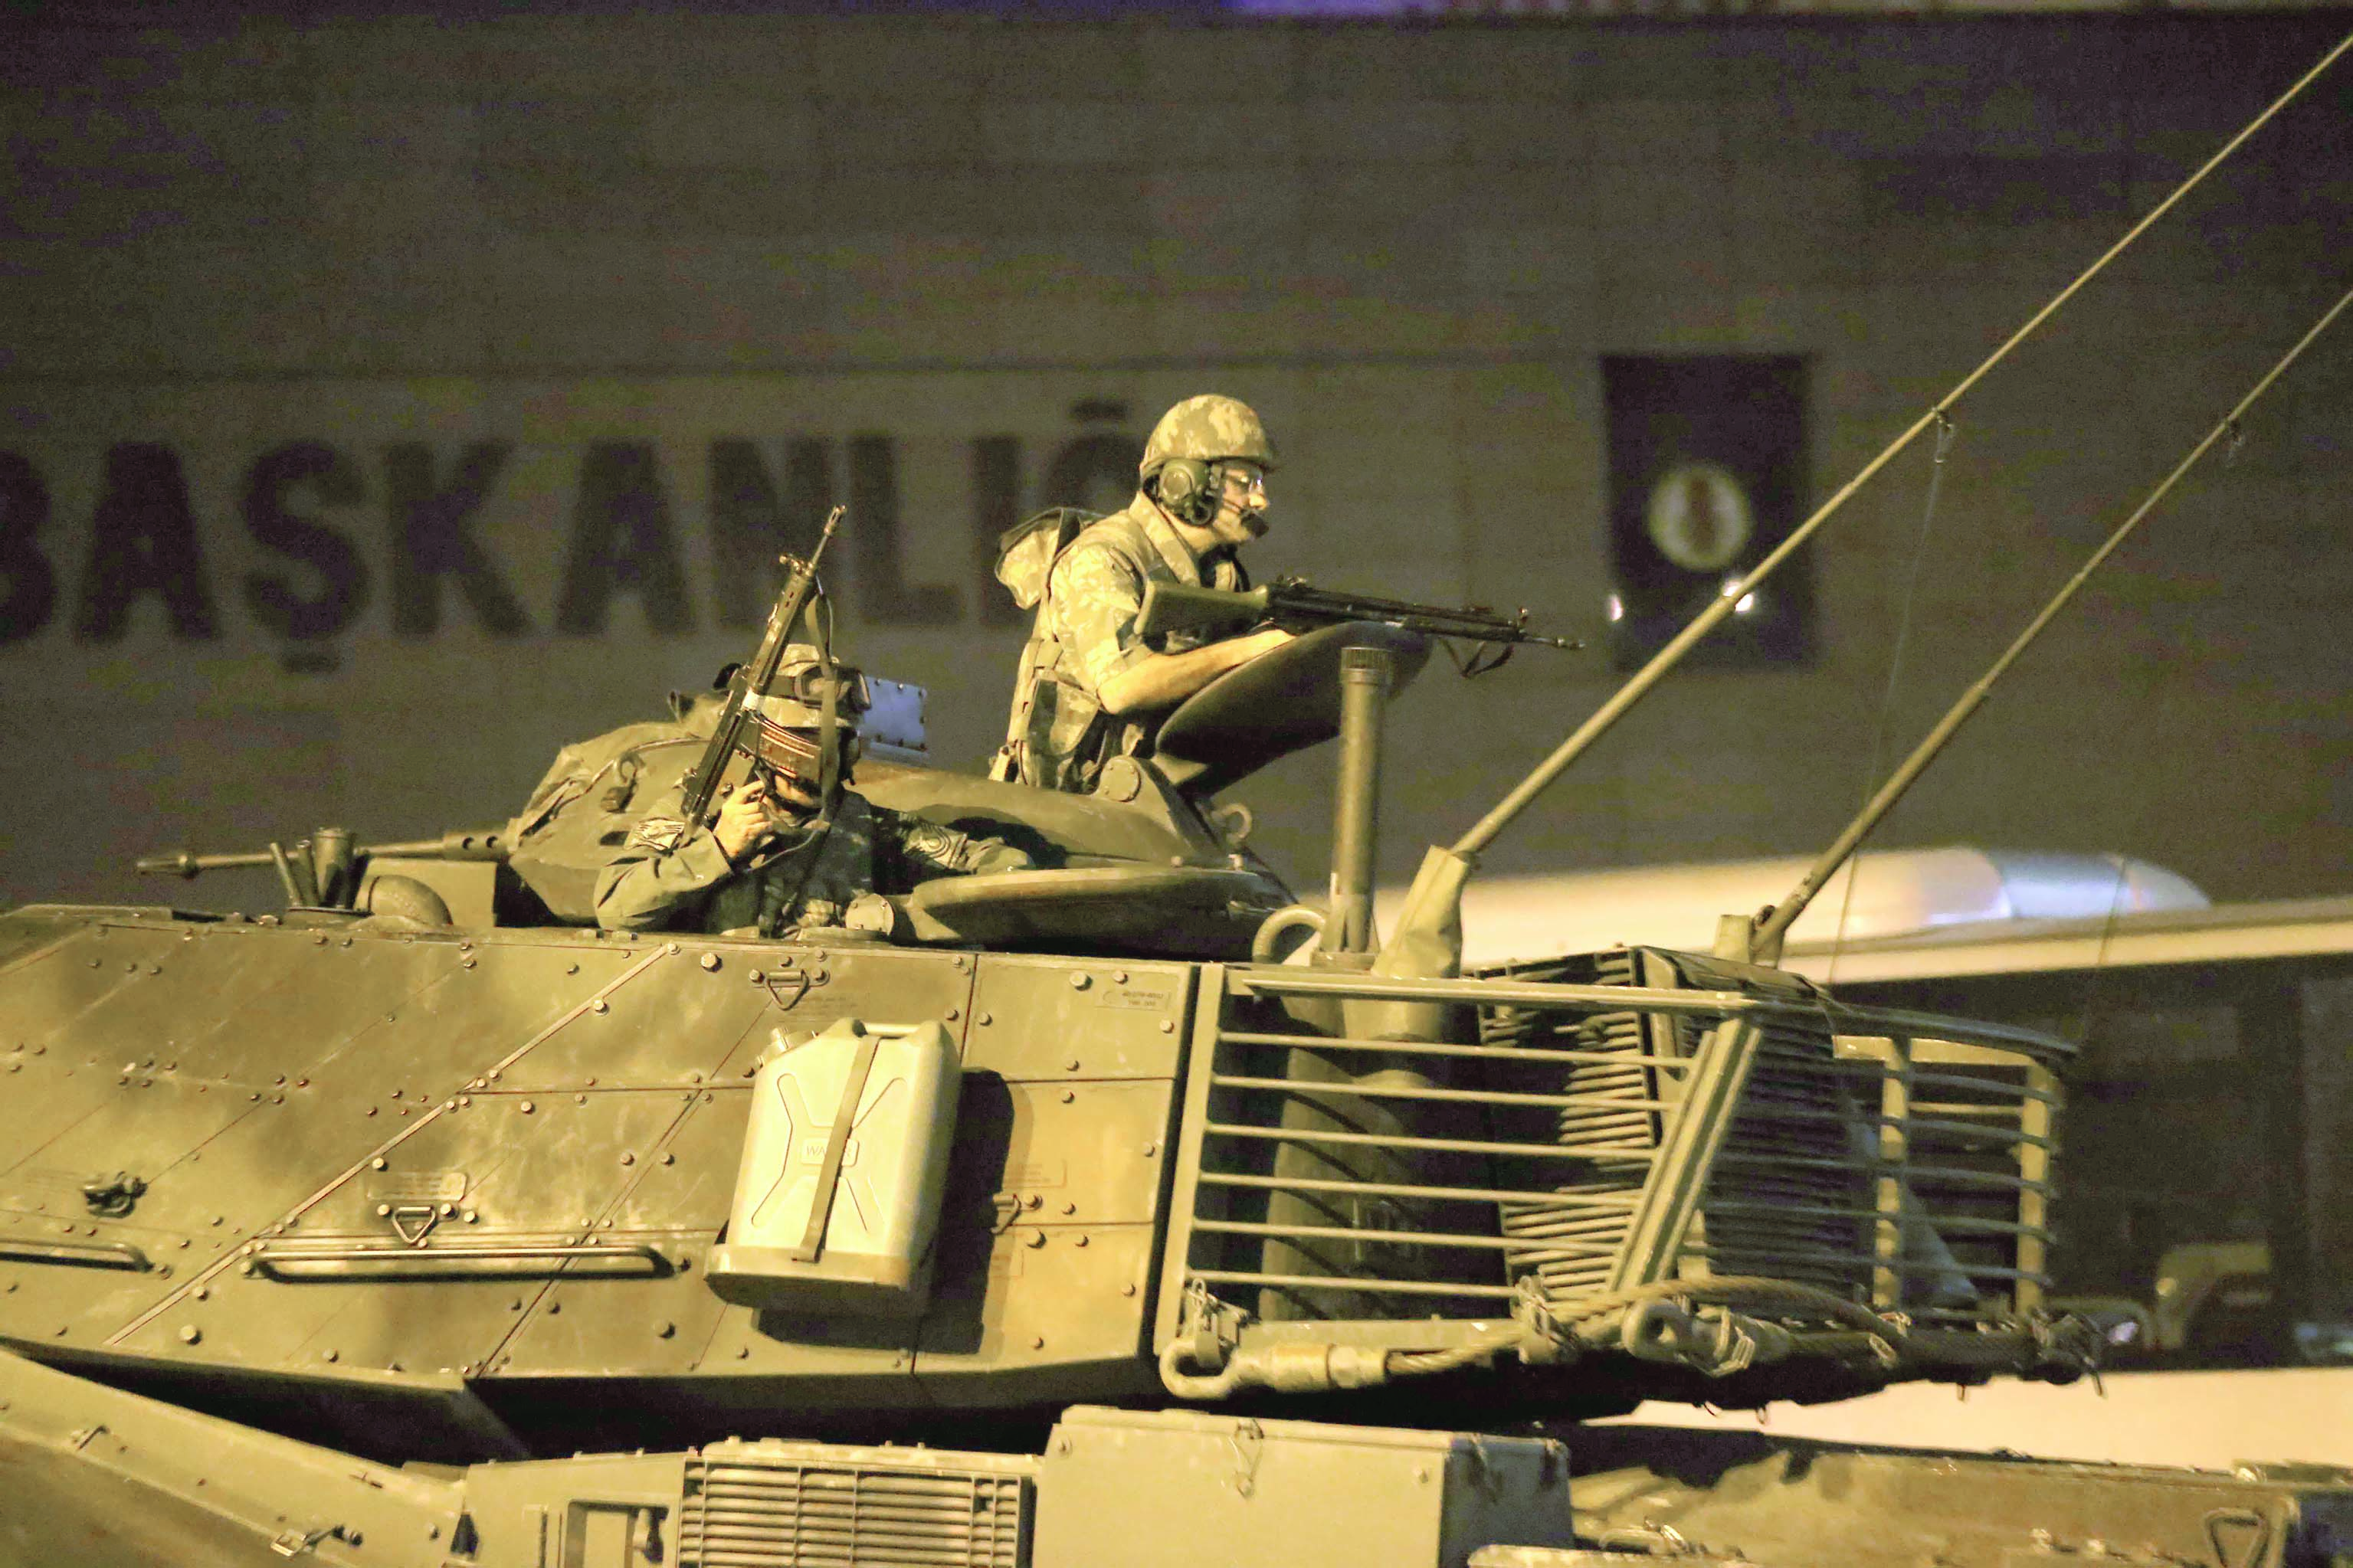 التسلسل الزمني لأبرز الأحداث في الانقلاب التركي الفاشل